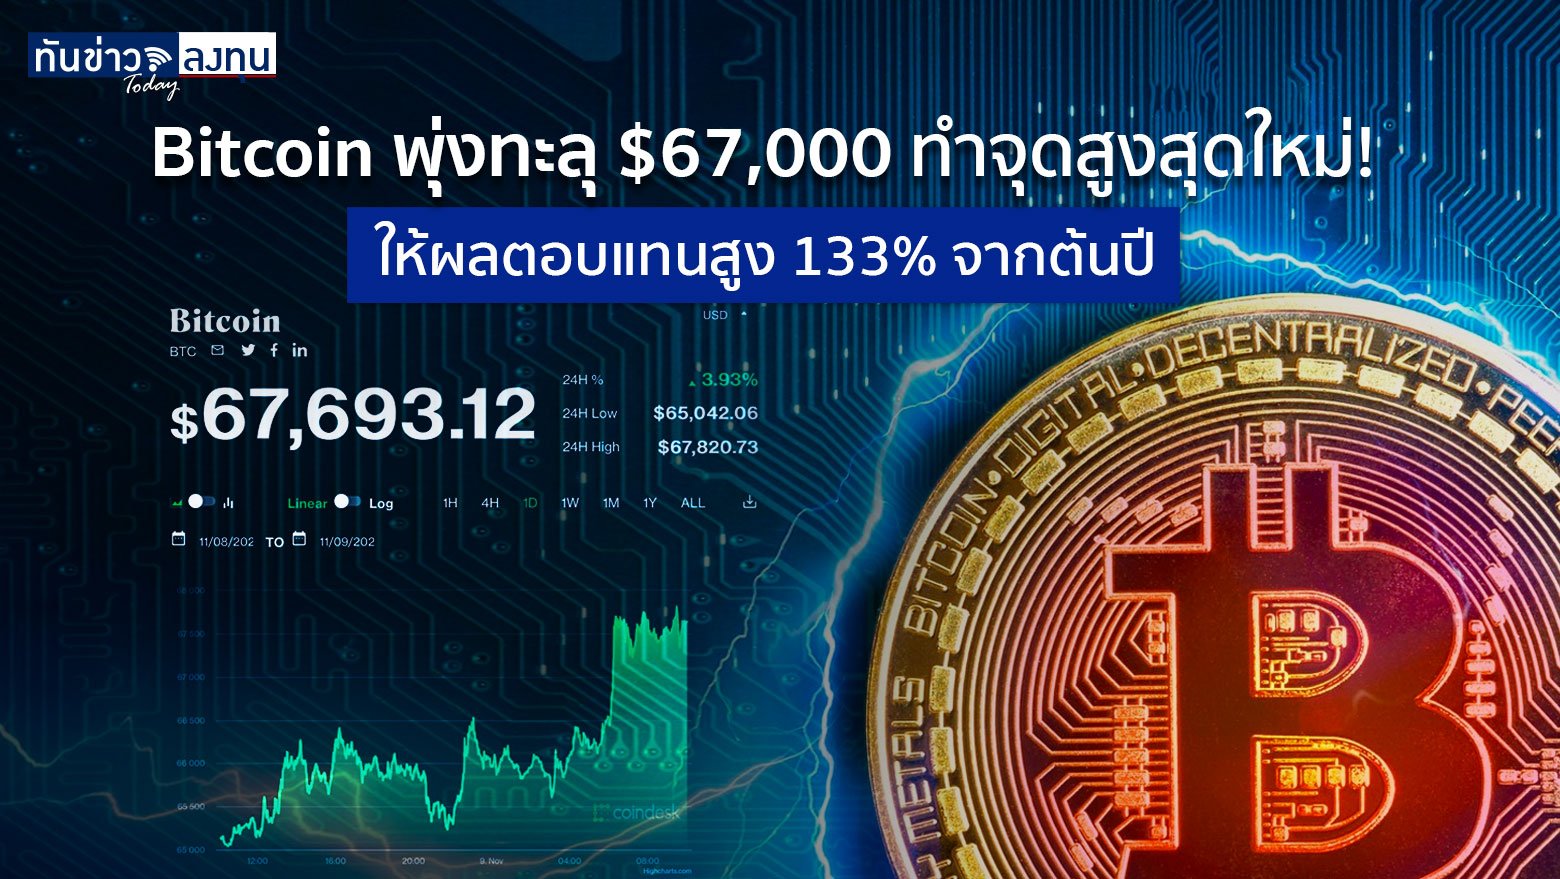 Bitcoin พุ่งทะลุ $67,000 ทำจุดสูงสุดใหม่! ให้ผลตอบแทนสูง 133% จากต้นปี |  ทันข่าว Today